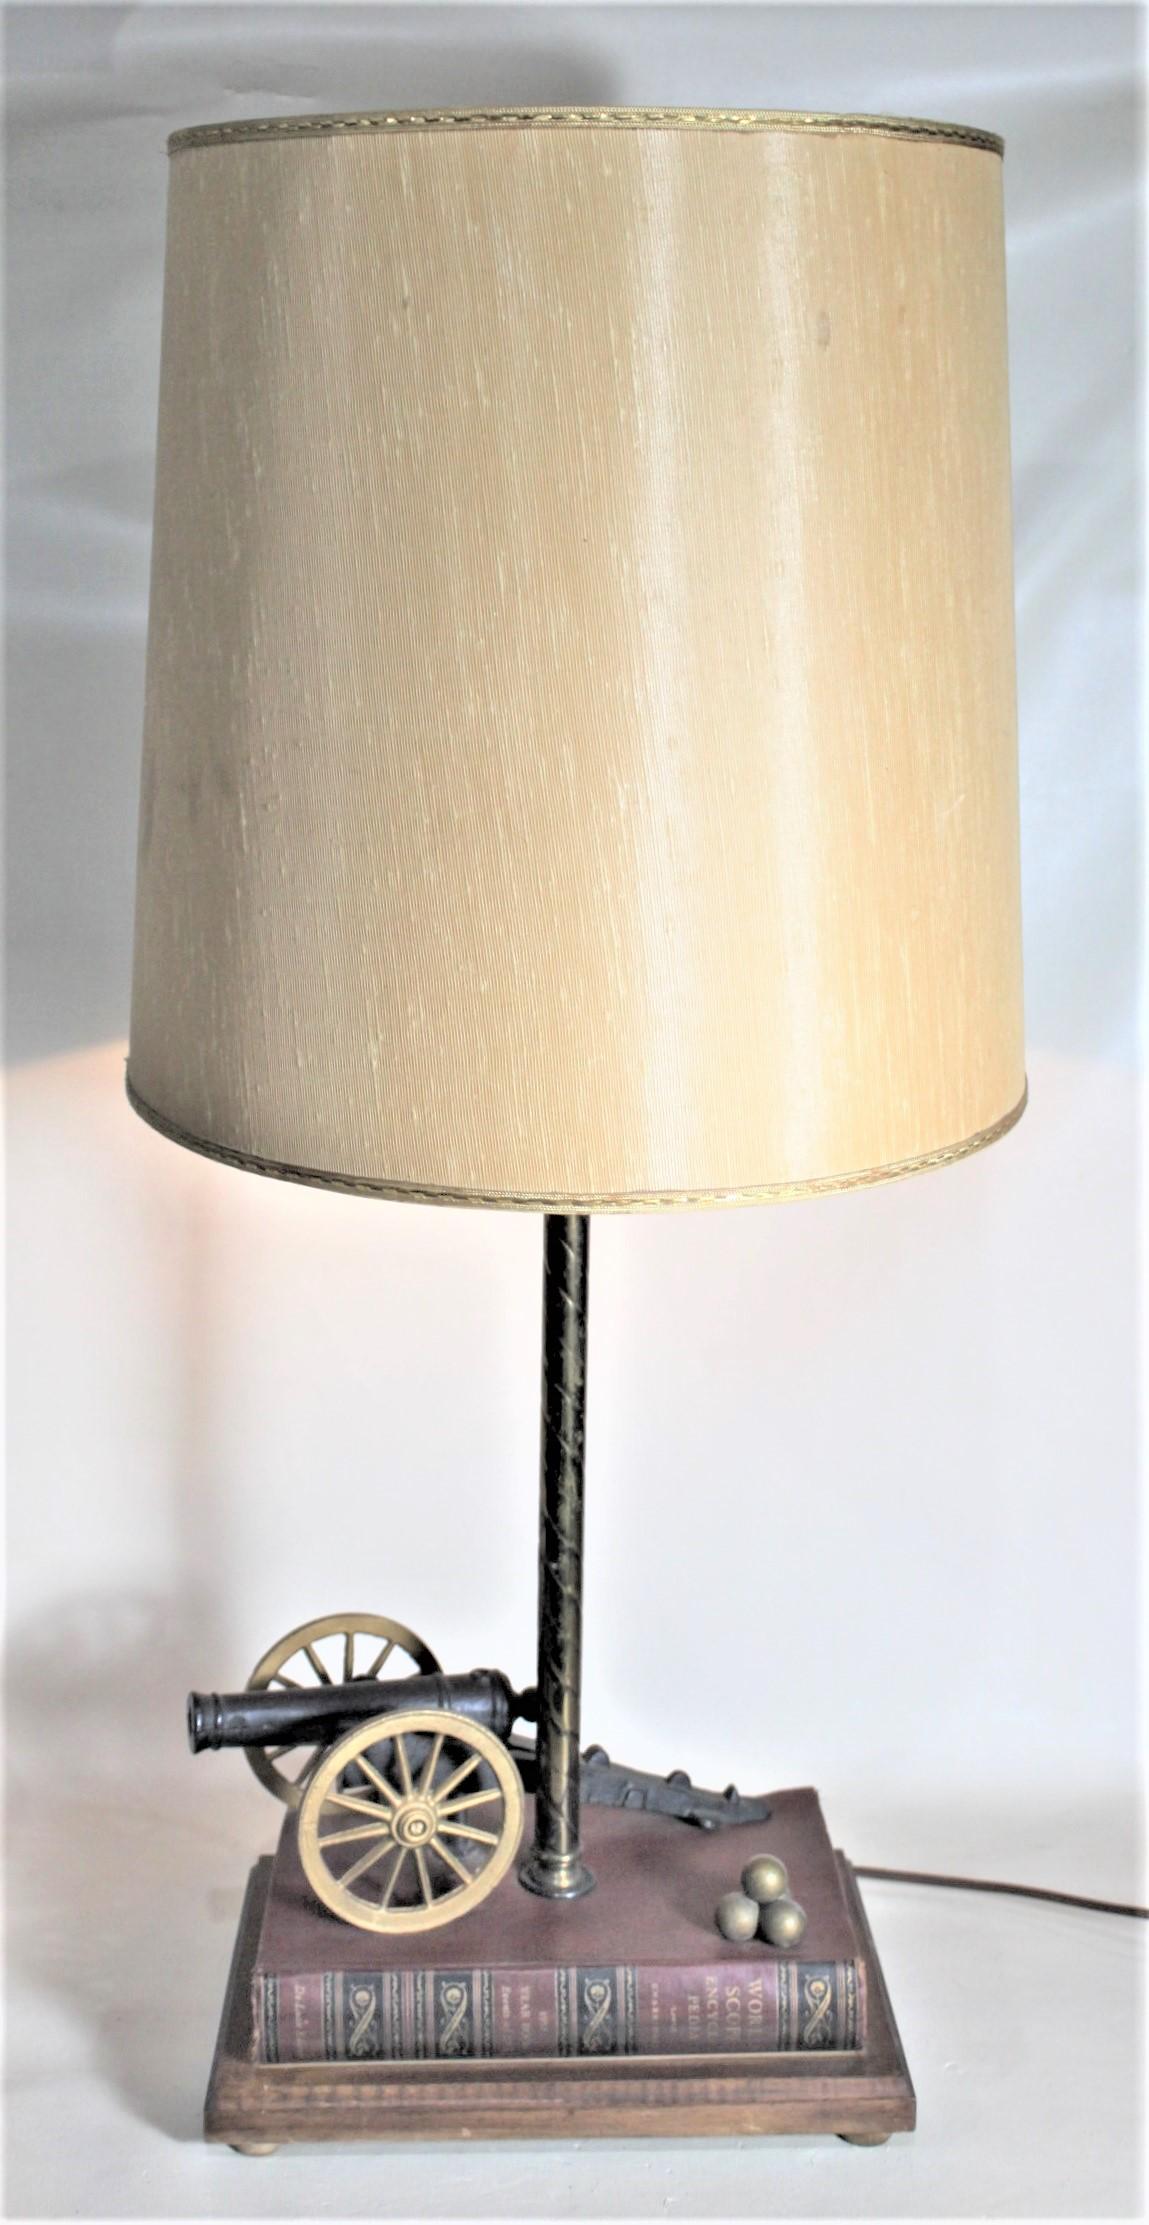 Cette lampe de table très unique et fonctionnelle n'est pas signée, mais on présume qu'elle a été fabriquée à la maison au Canada vers 1965 dans le style du milieu du siècle dernier. La lampe comporte un canon figuratif en fonte et un livre relié en